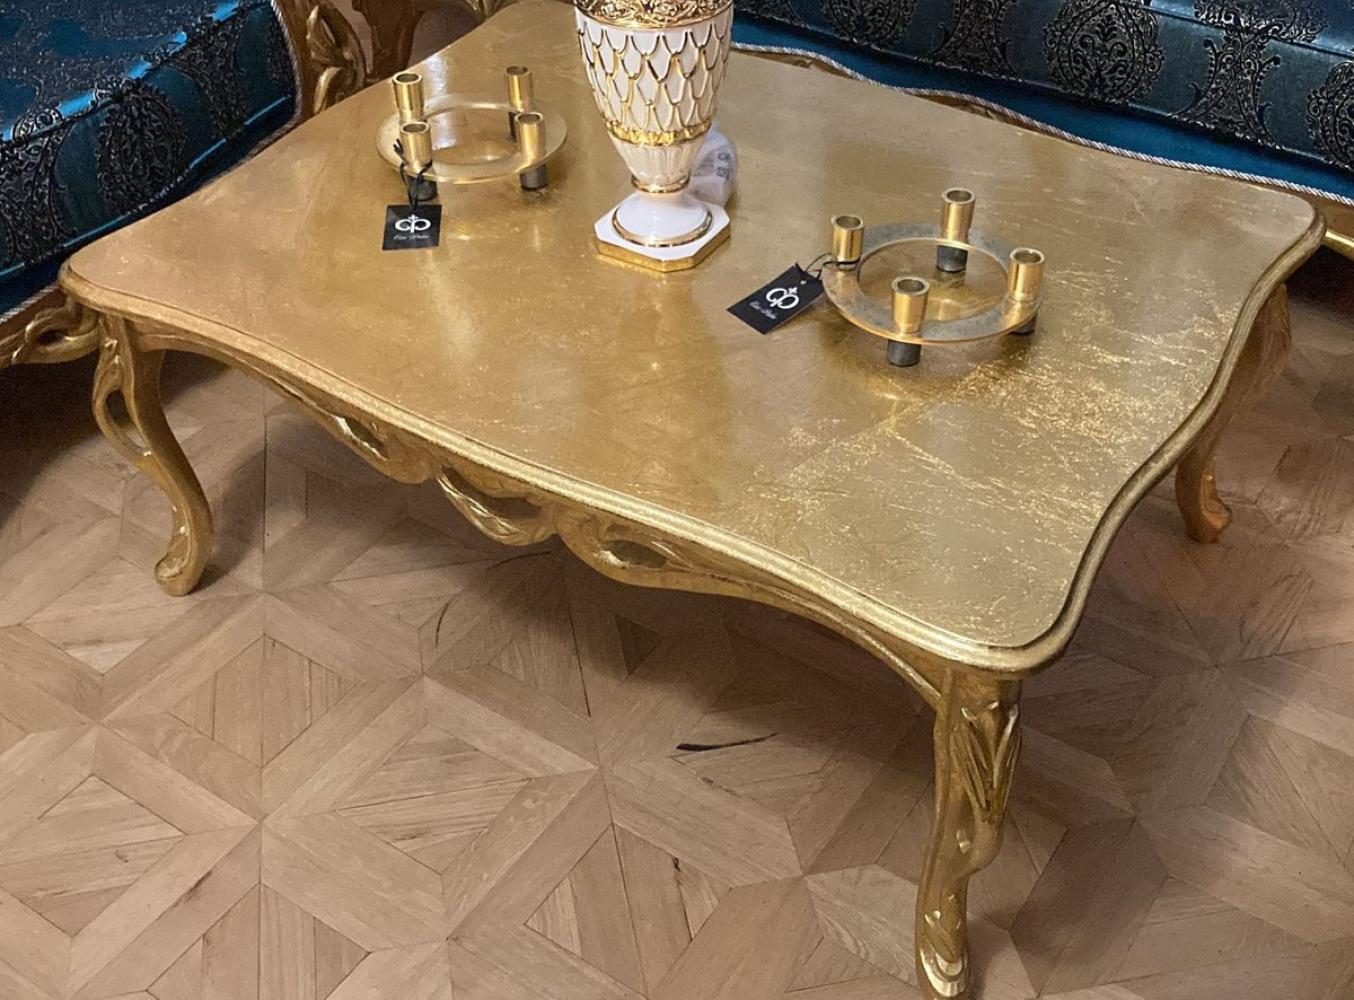 Casa Padrino Luxus Barock Couchtisch Antik Gold - Rechteckiger Massivholz Wohnzimmertisch im Barockstil - Barock Möbel - Luxus Möbel im Barockstil - Barock Einrichtung - Edel & Prunkvoll Bild 1